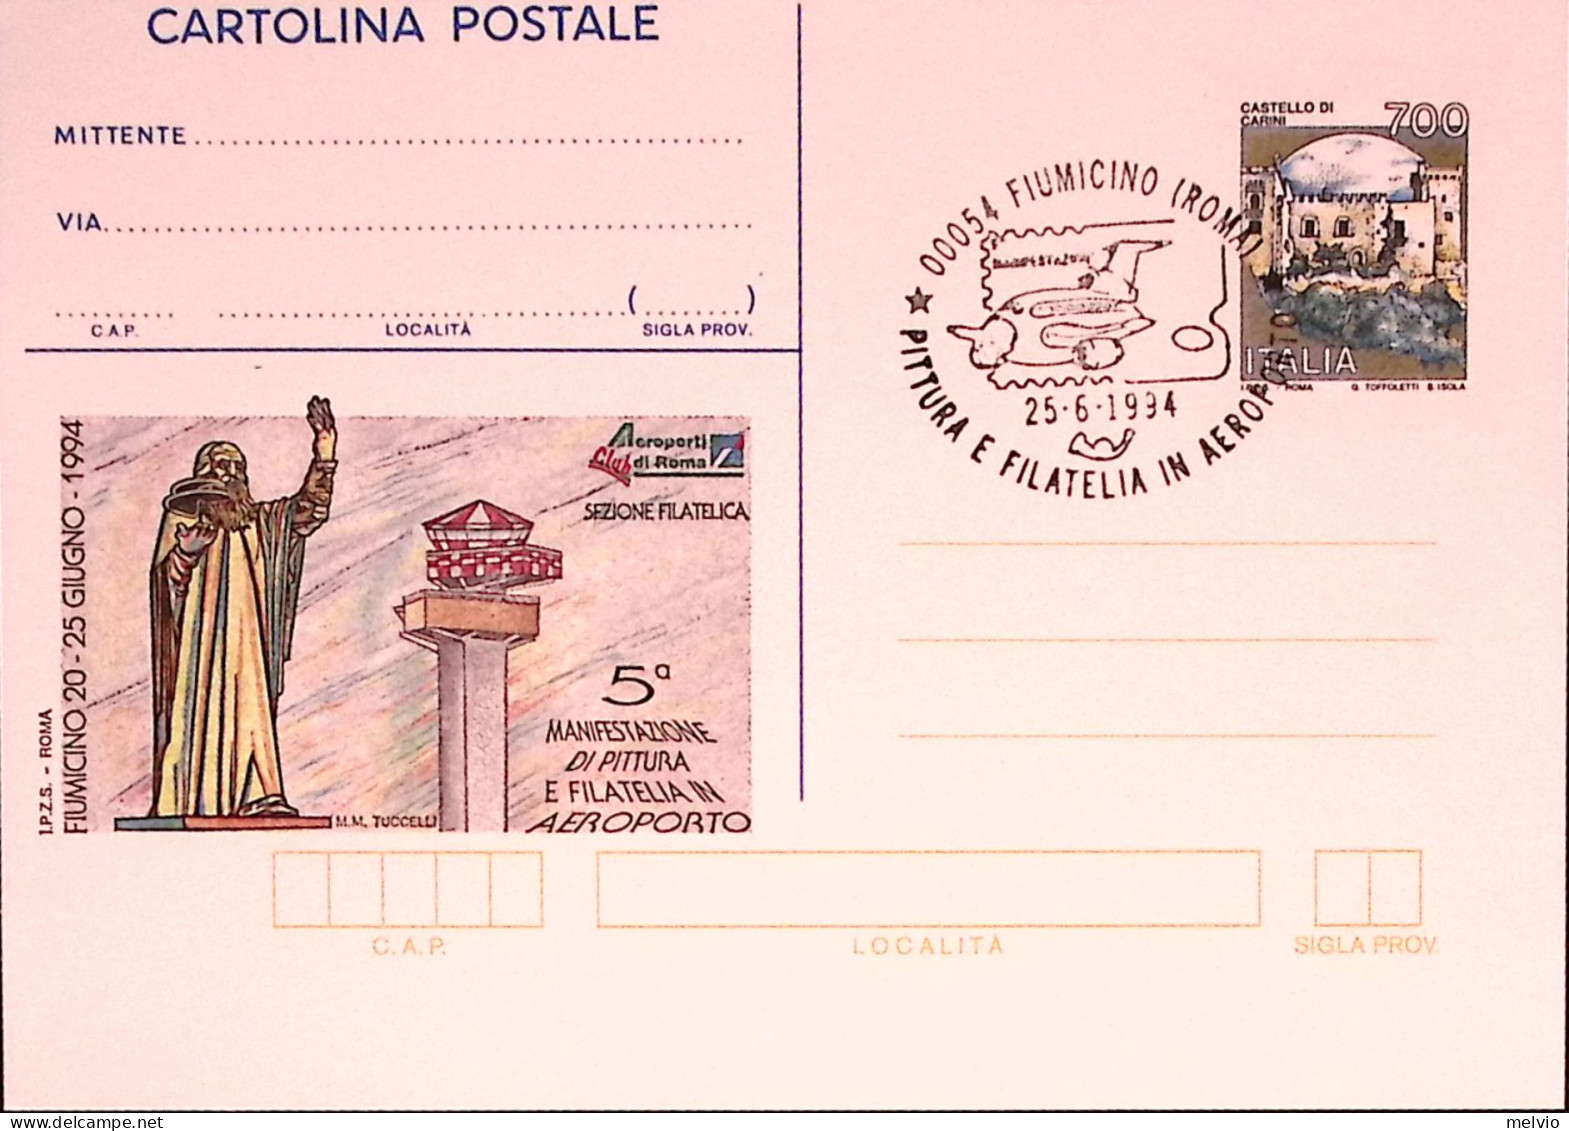 1994-ROMA AEROPORTO Cartolina Postale IPZS Lire 700 Con Ann Spec - Interi Postali